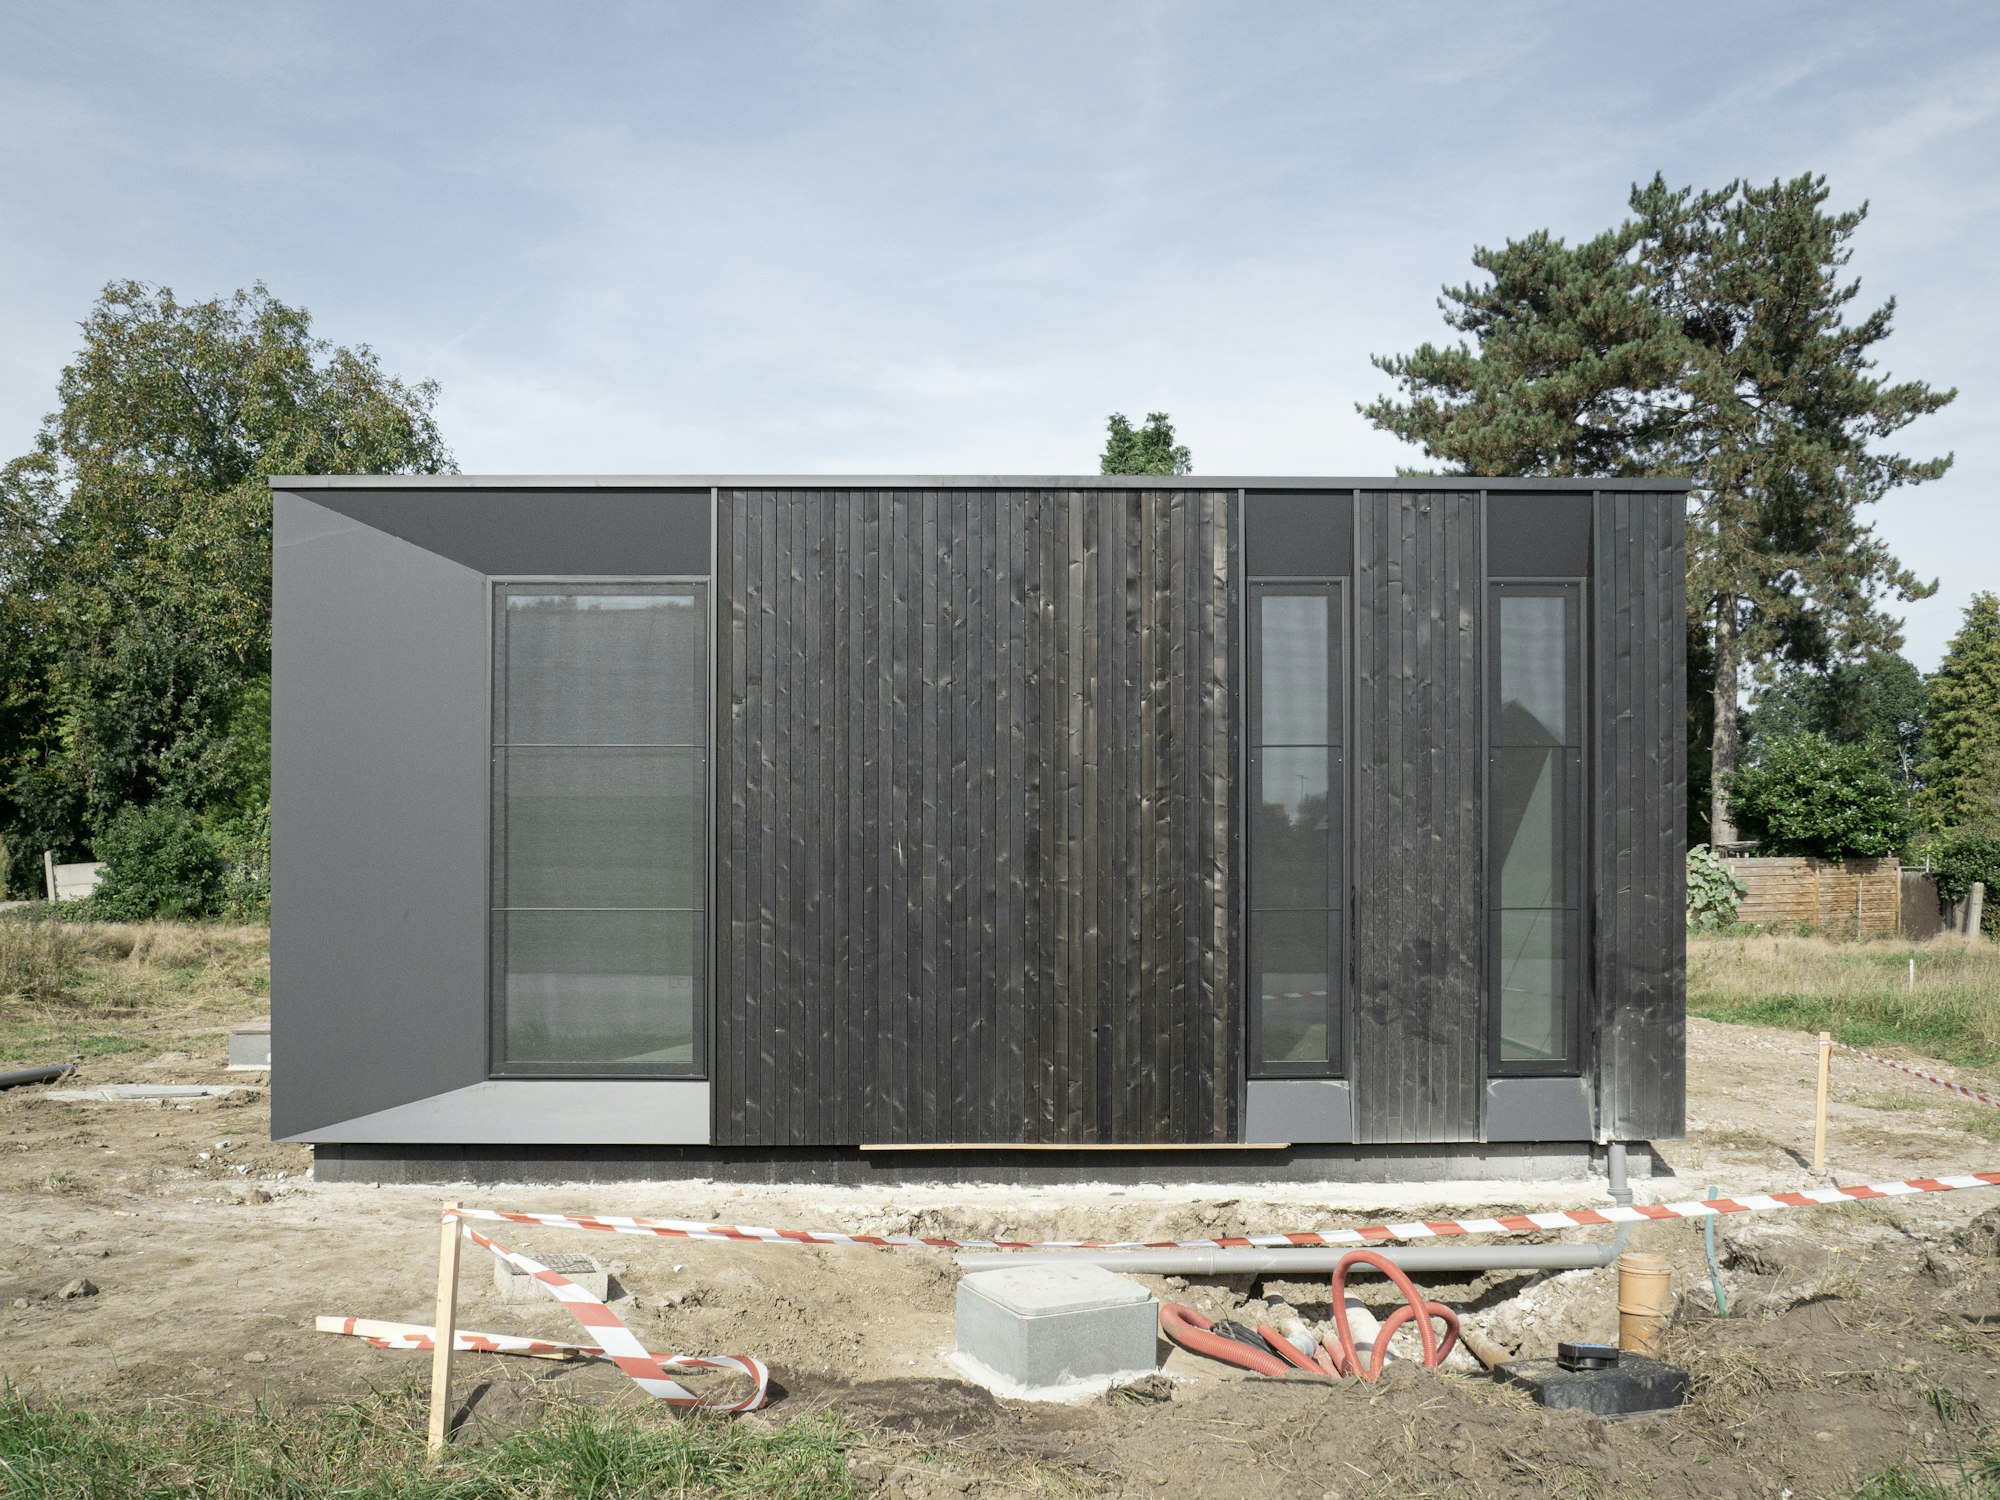 Houtskeletbouw woning Skilpod #100 in zwart hout, recent geplaatst op de bouwwerf